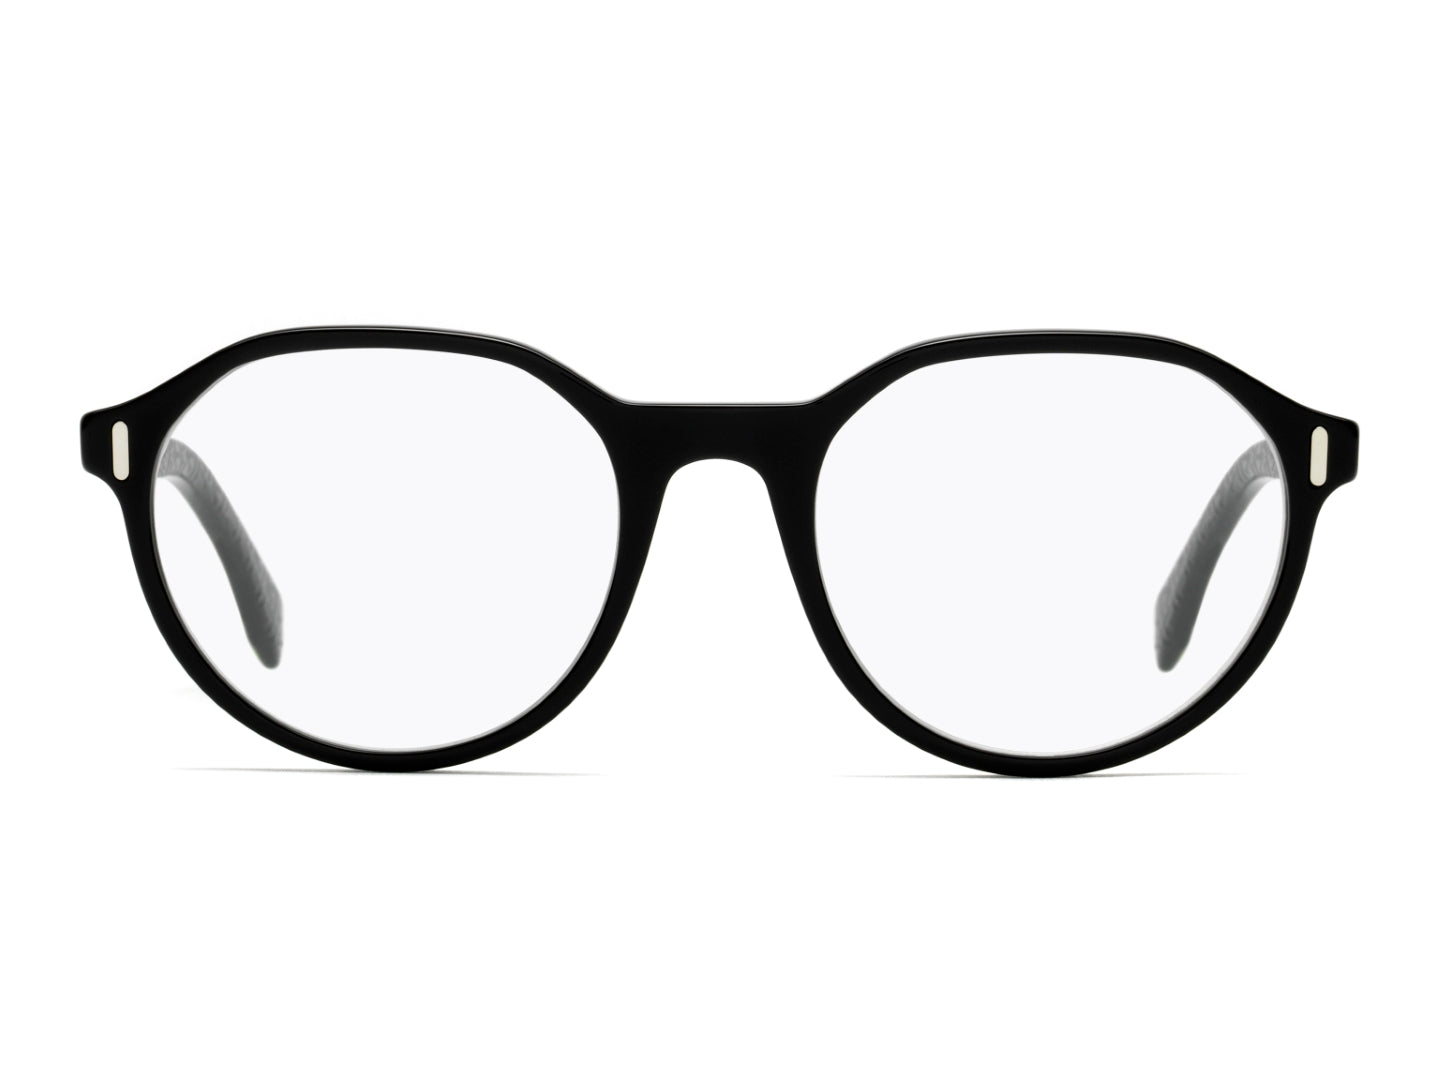 FENDI MAN ROUND Eyeglasses-FF M0061 Size 51